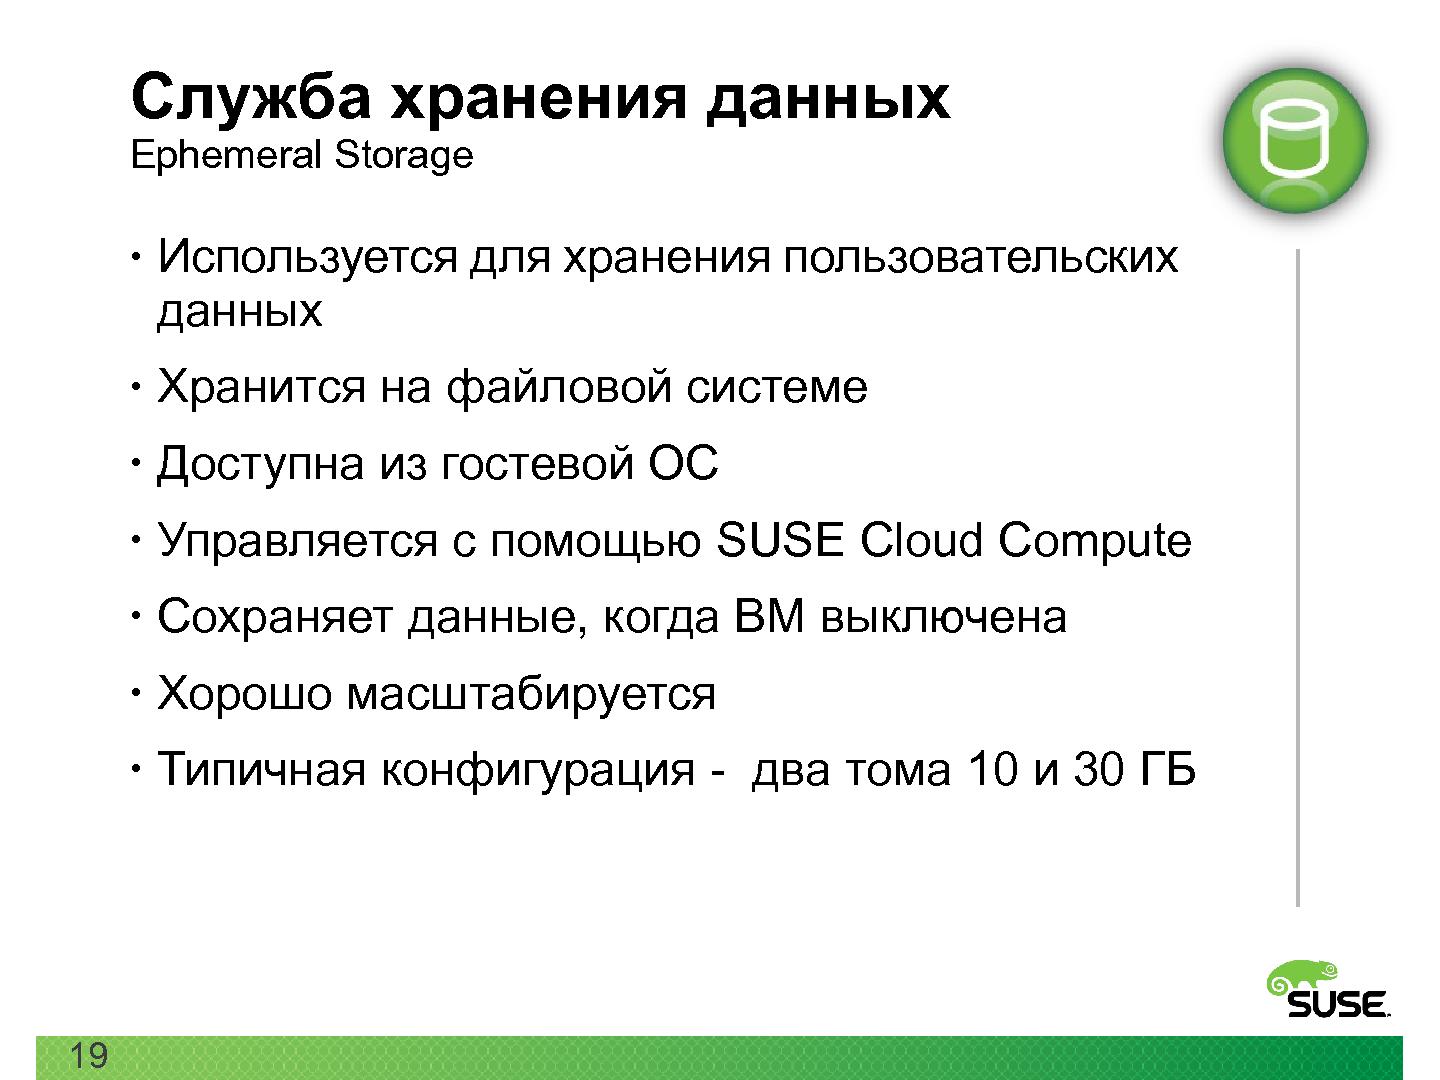 Файл:Открытая платформа SUSE для облачных вычислений (Кирилл Степанов, ROSS-2014).pdf